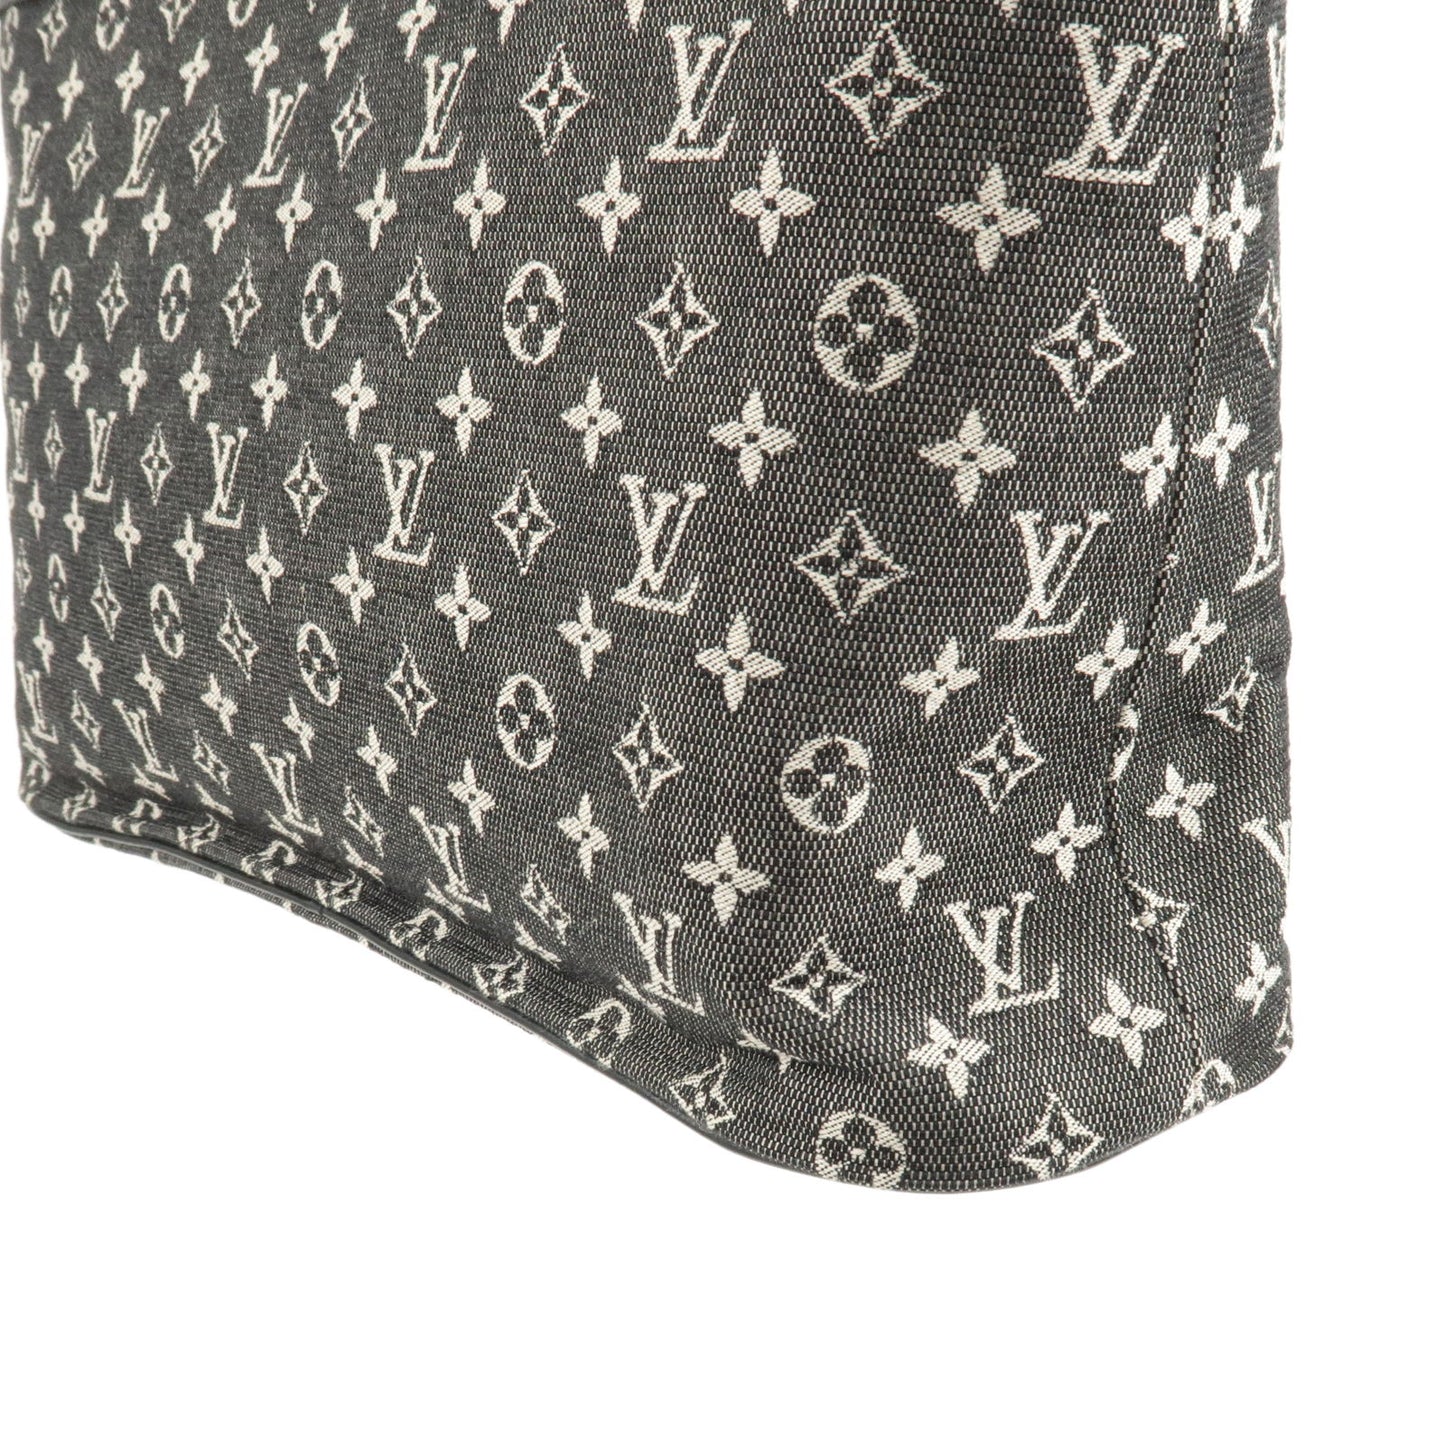 Louis Vuitton Monogram Mini Lucille PM Hand Bag Noir M92684